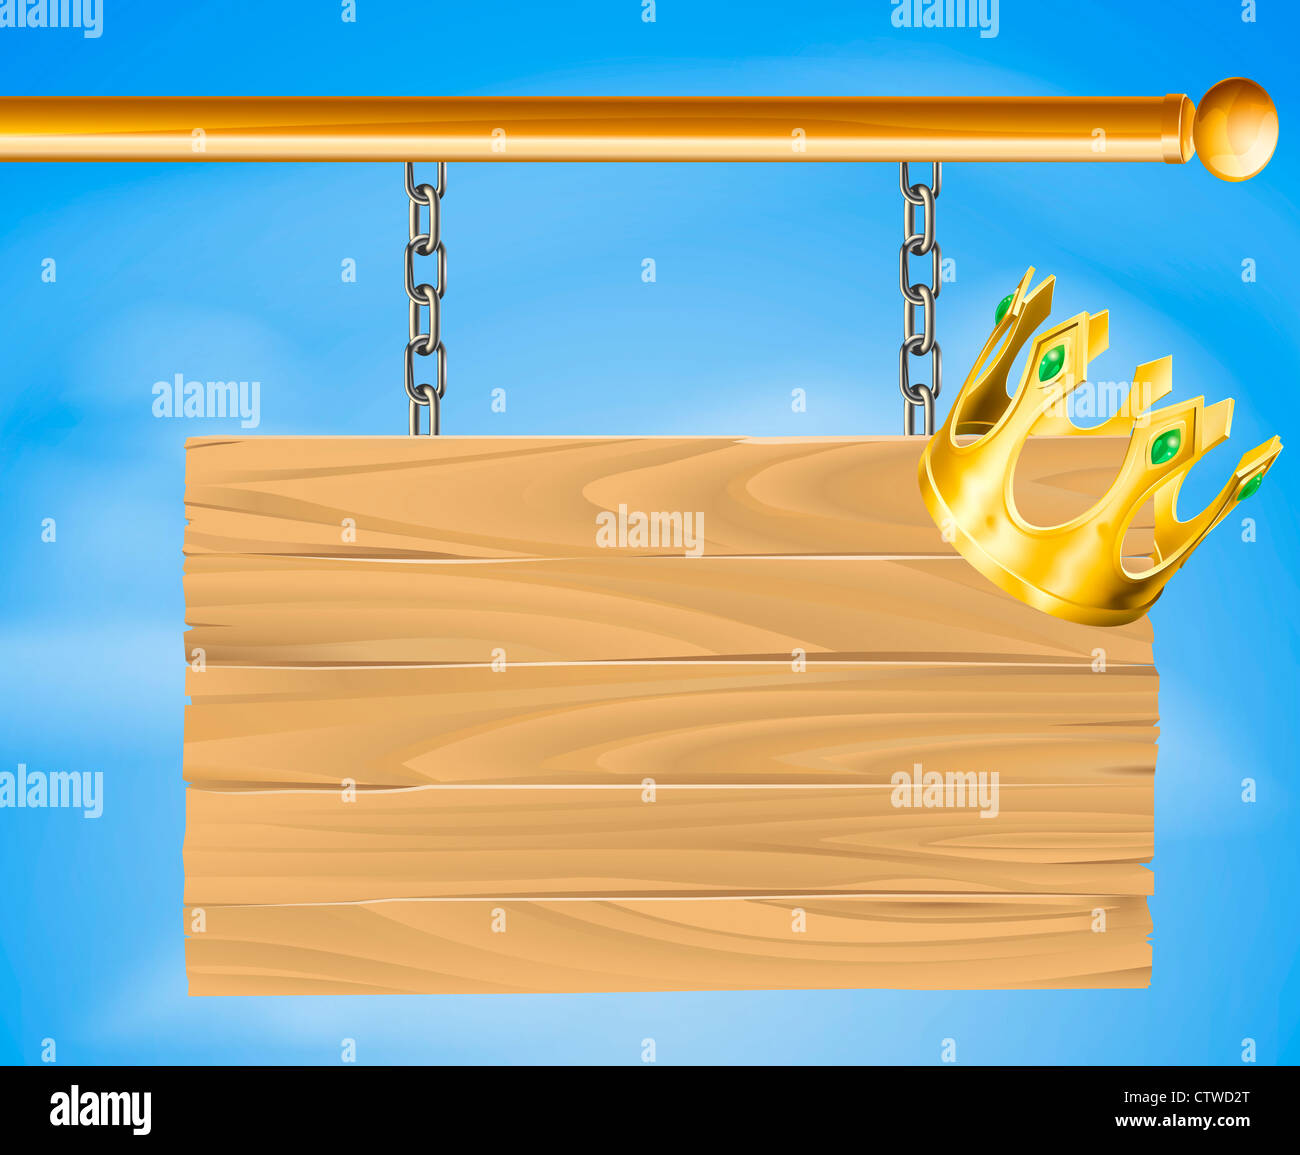 Abbildung eines hölzernen hängenden Zeichens mit einer goldenen Krone drauf Stockfoto